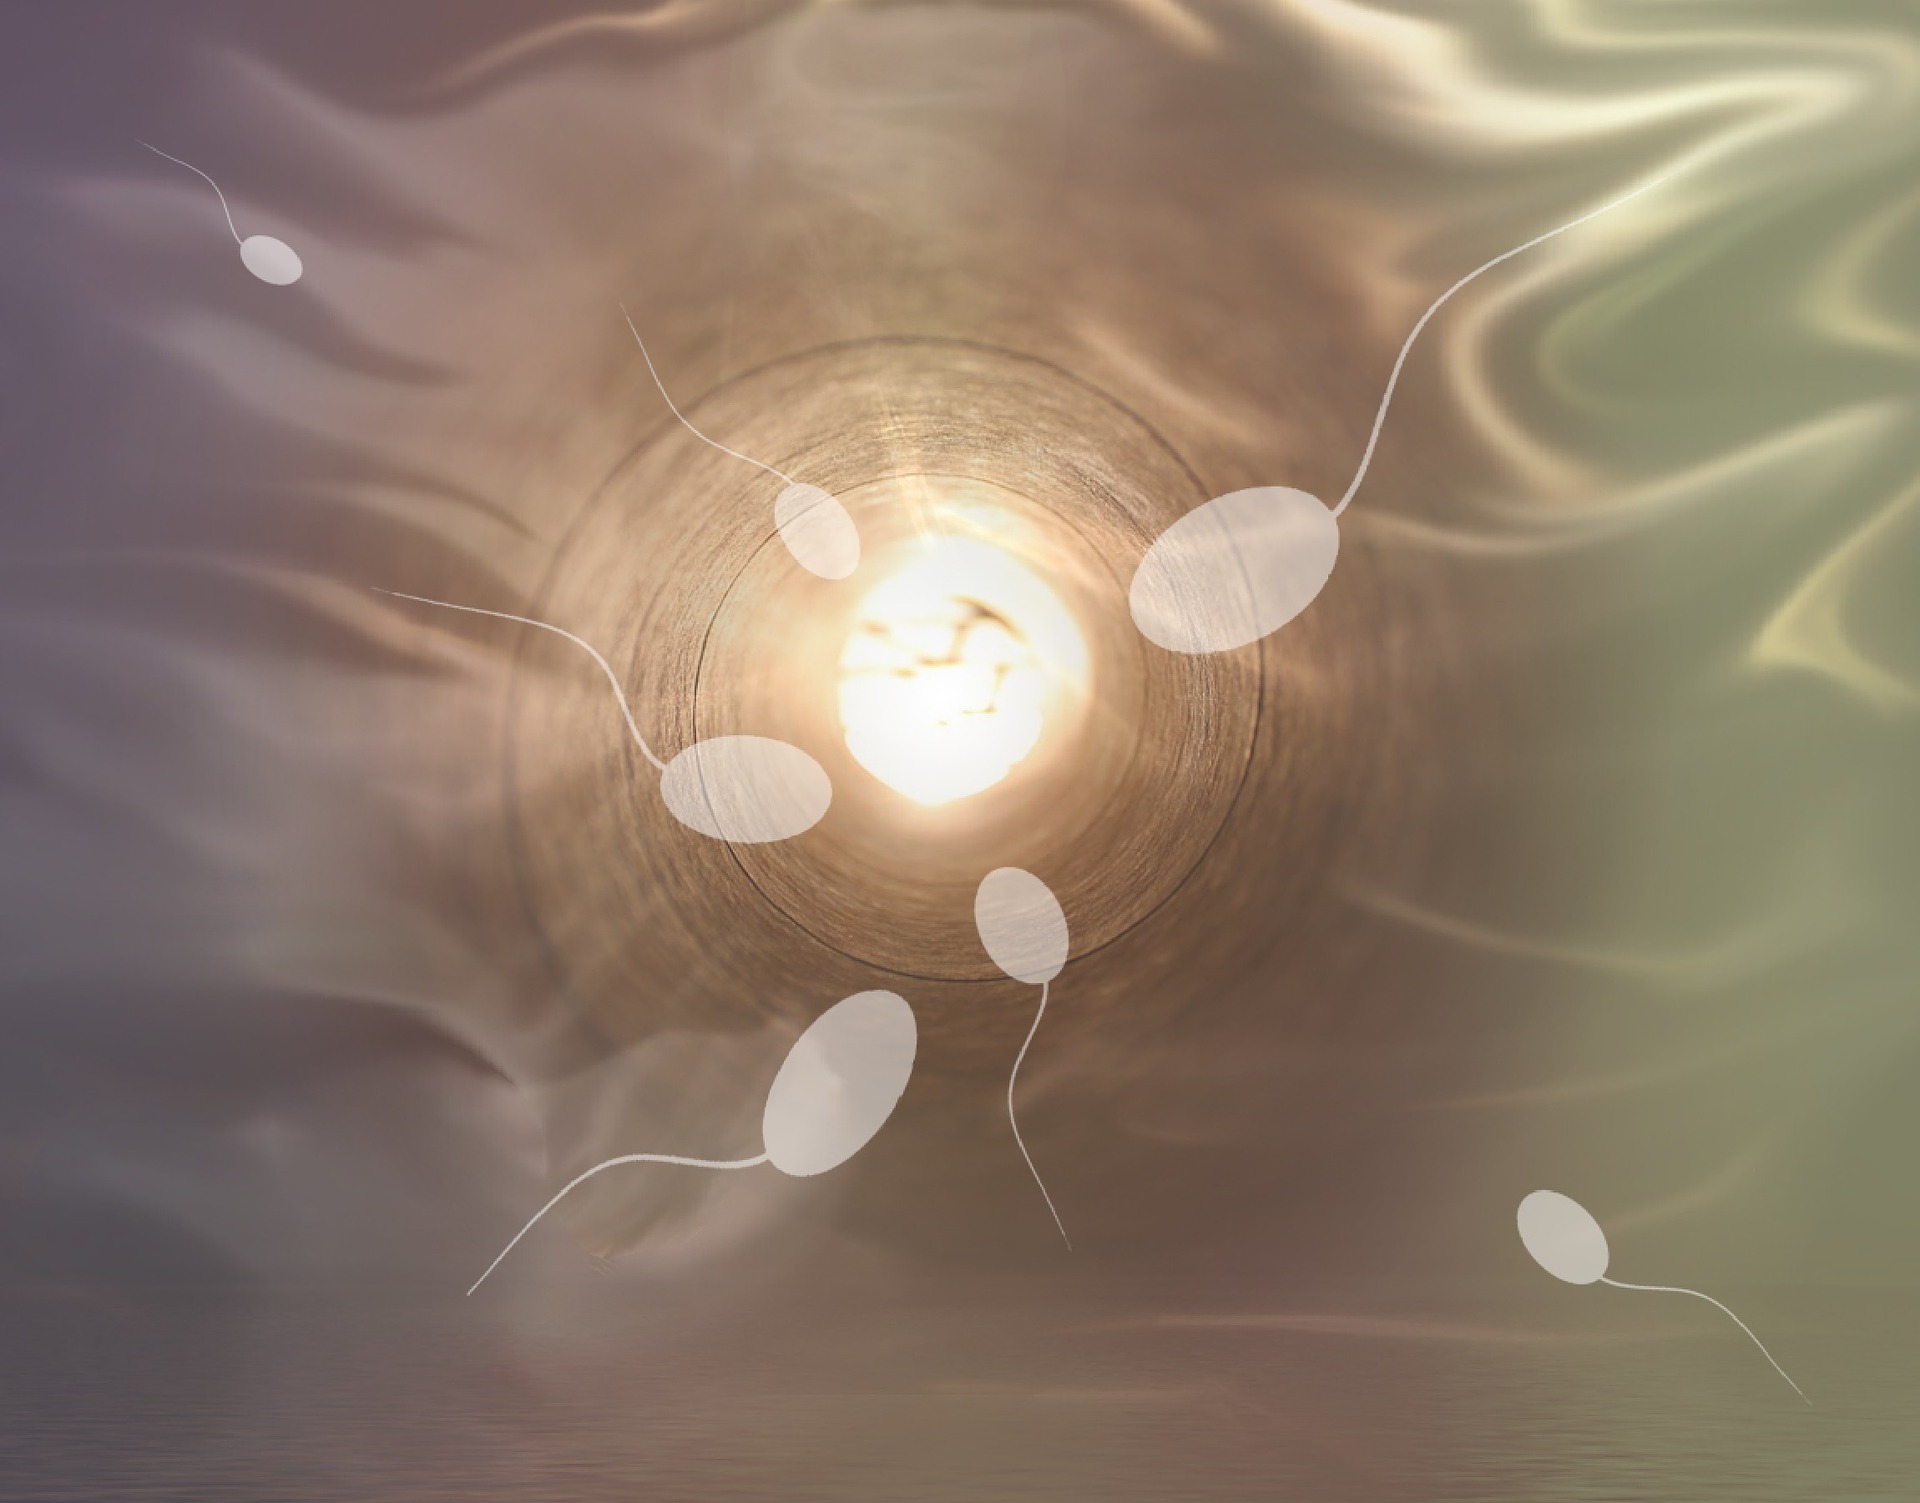 A spermium minőségi romlása a magzatra és a nőre is komoly hatással lehet